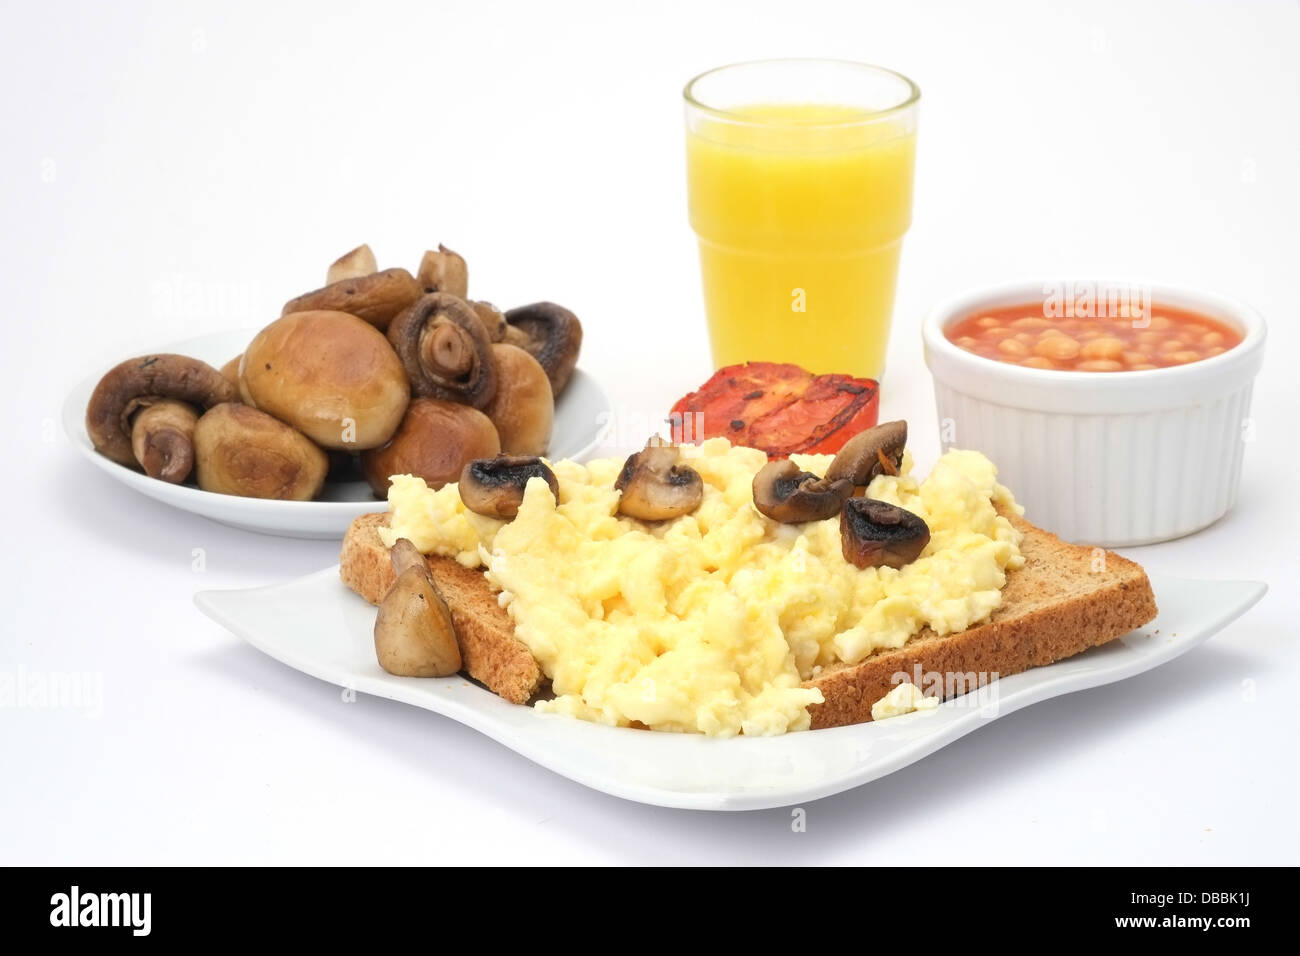 Des œufs brouillés sur du pain grillé avec des haricots blancs, les champignons et le jus d'orange Banque D'Images